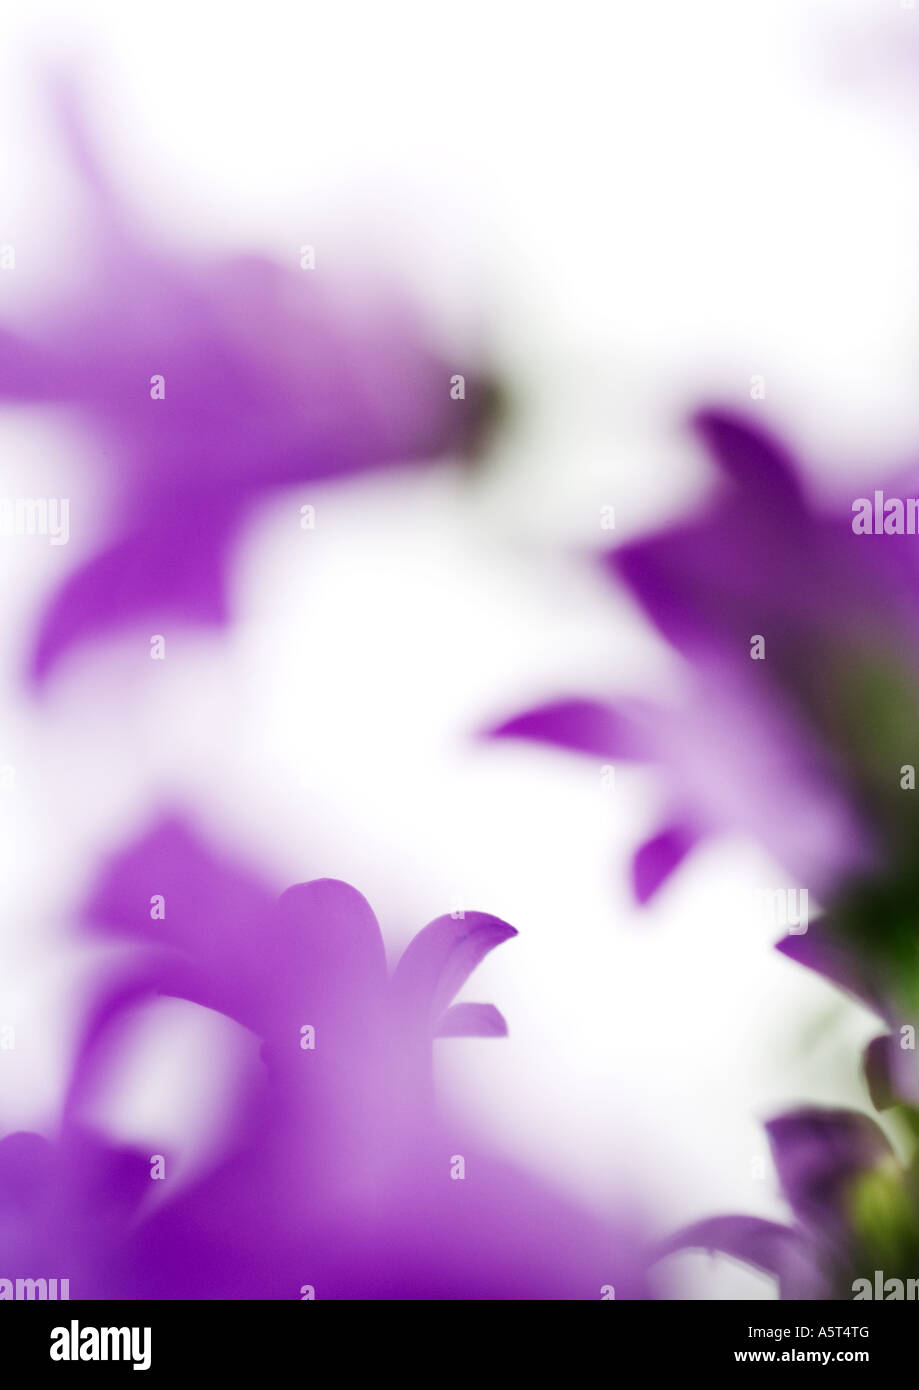 Purple flowers, defocused Stock Photo